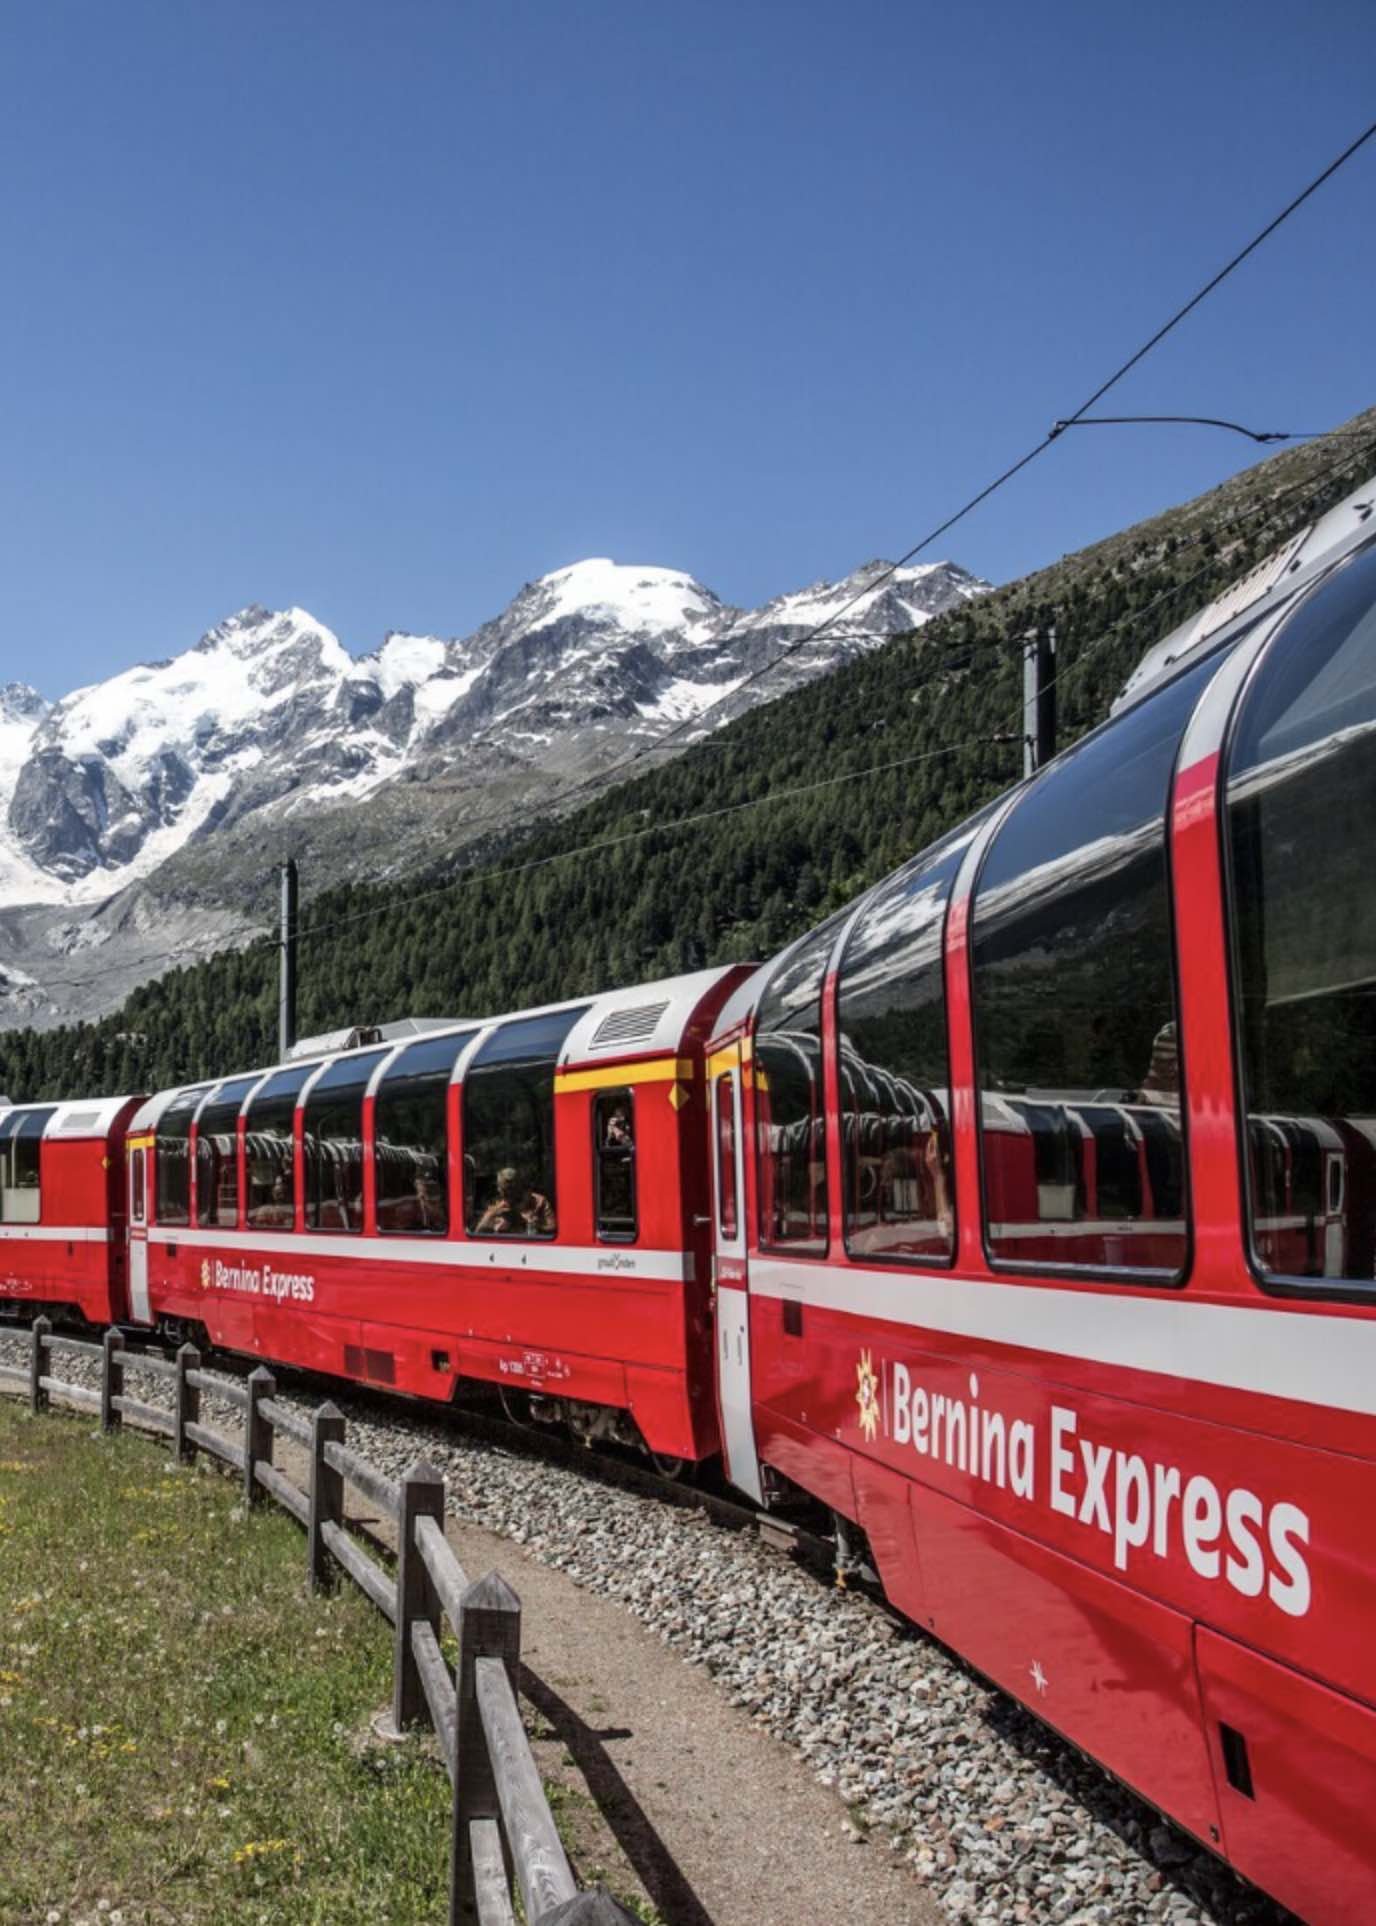 Alma de Viaje - Suiza - Trenes Panoramicos 8 Bernina Express.jpeg